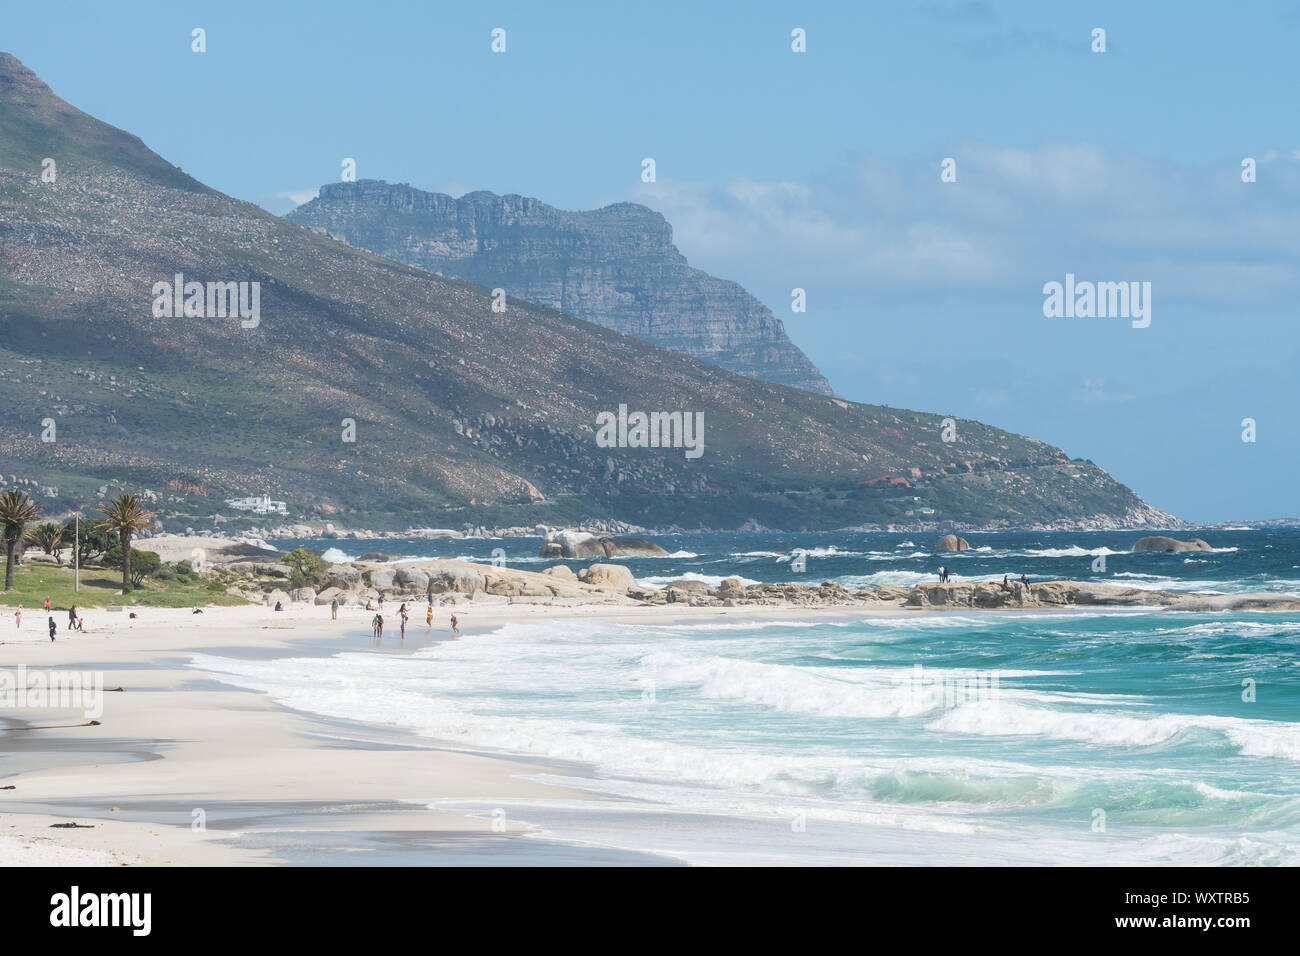 Camps Bay paesaggio e paesaggi marini di sabbia bianca spiaggia bandiera blu e acque turchesi dell'oceano Atlantico con beachgoers di Città del Capo in Sud Africa Foto Stock